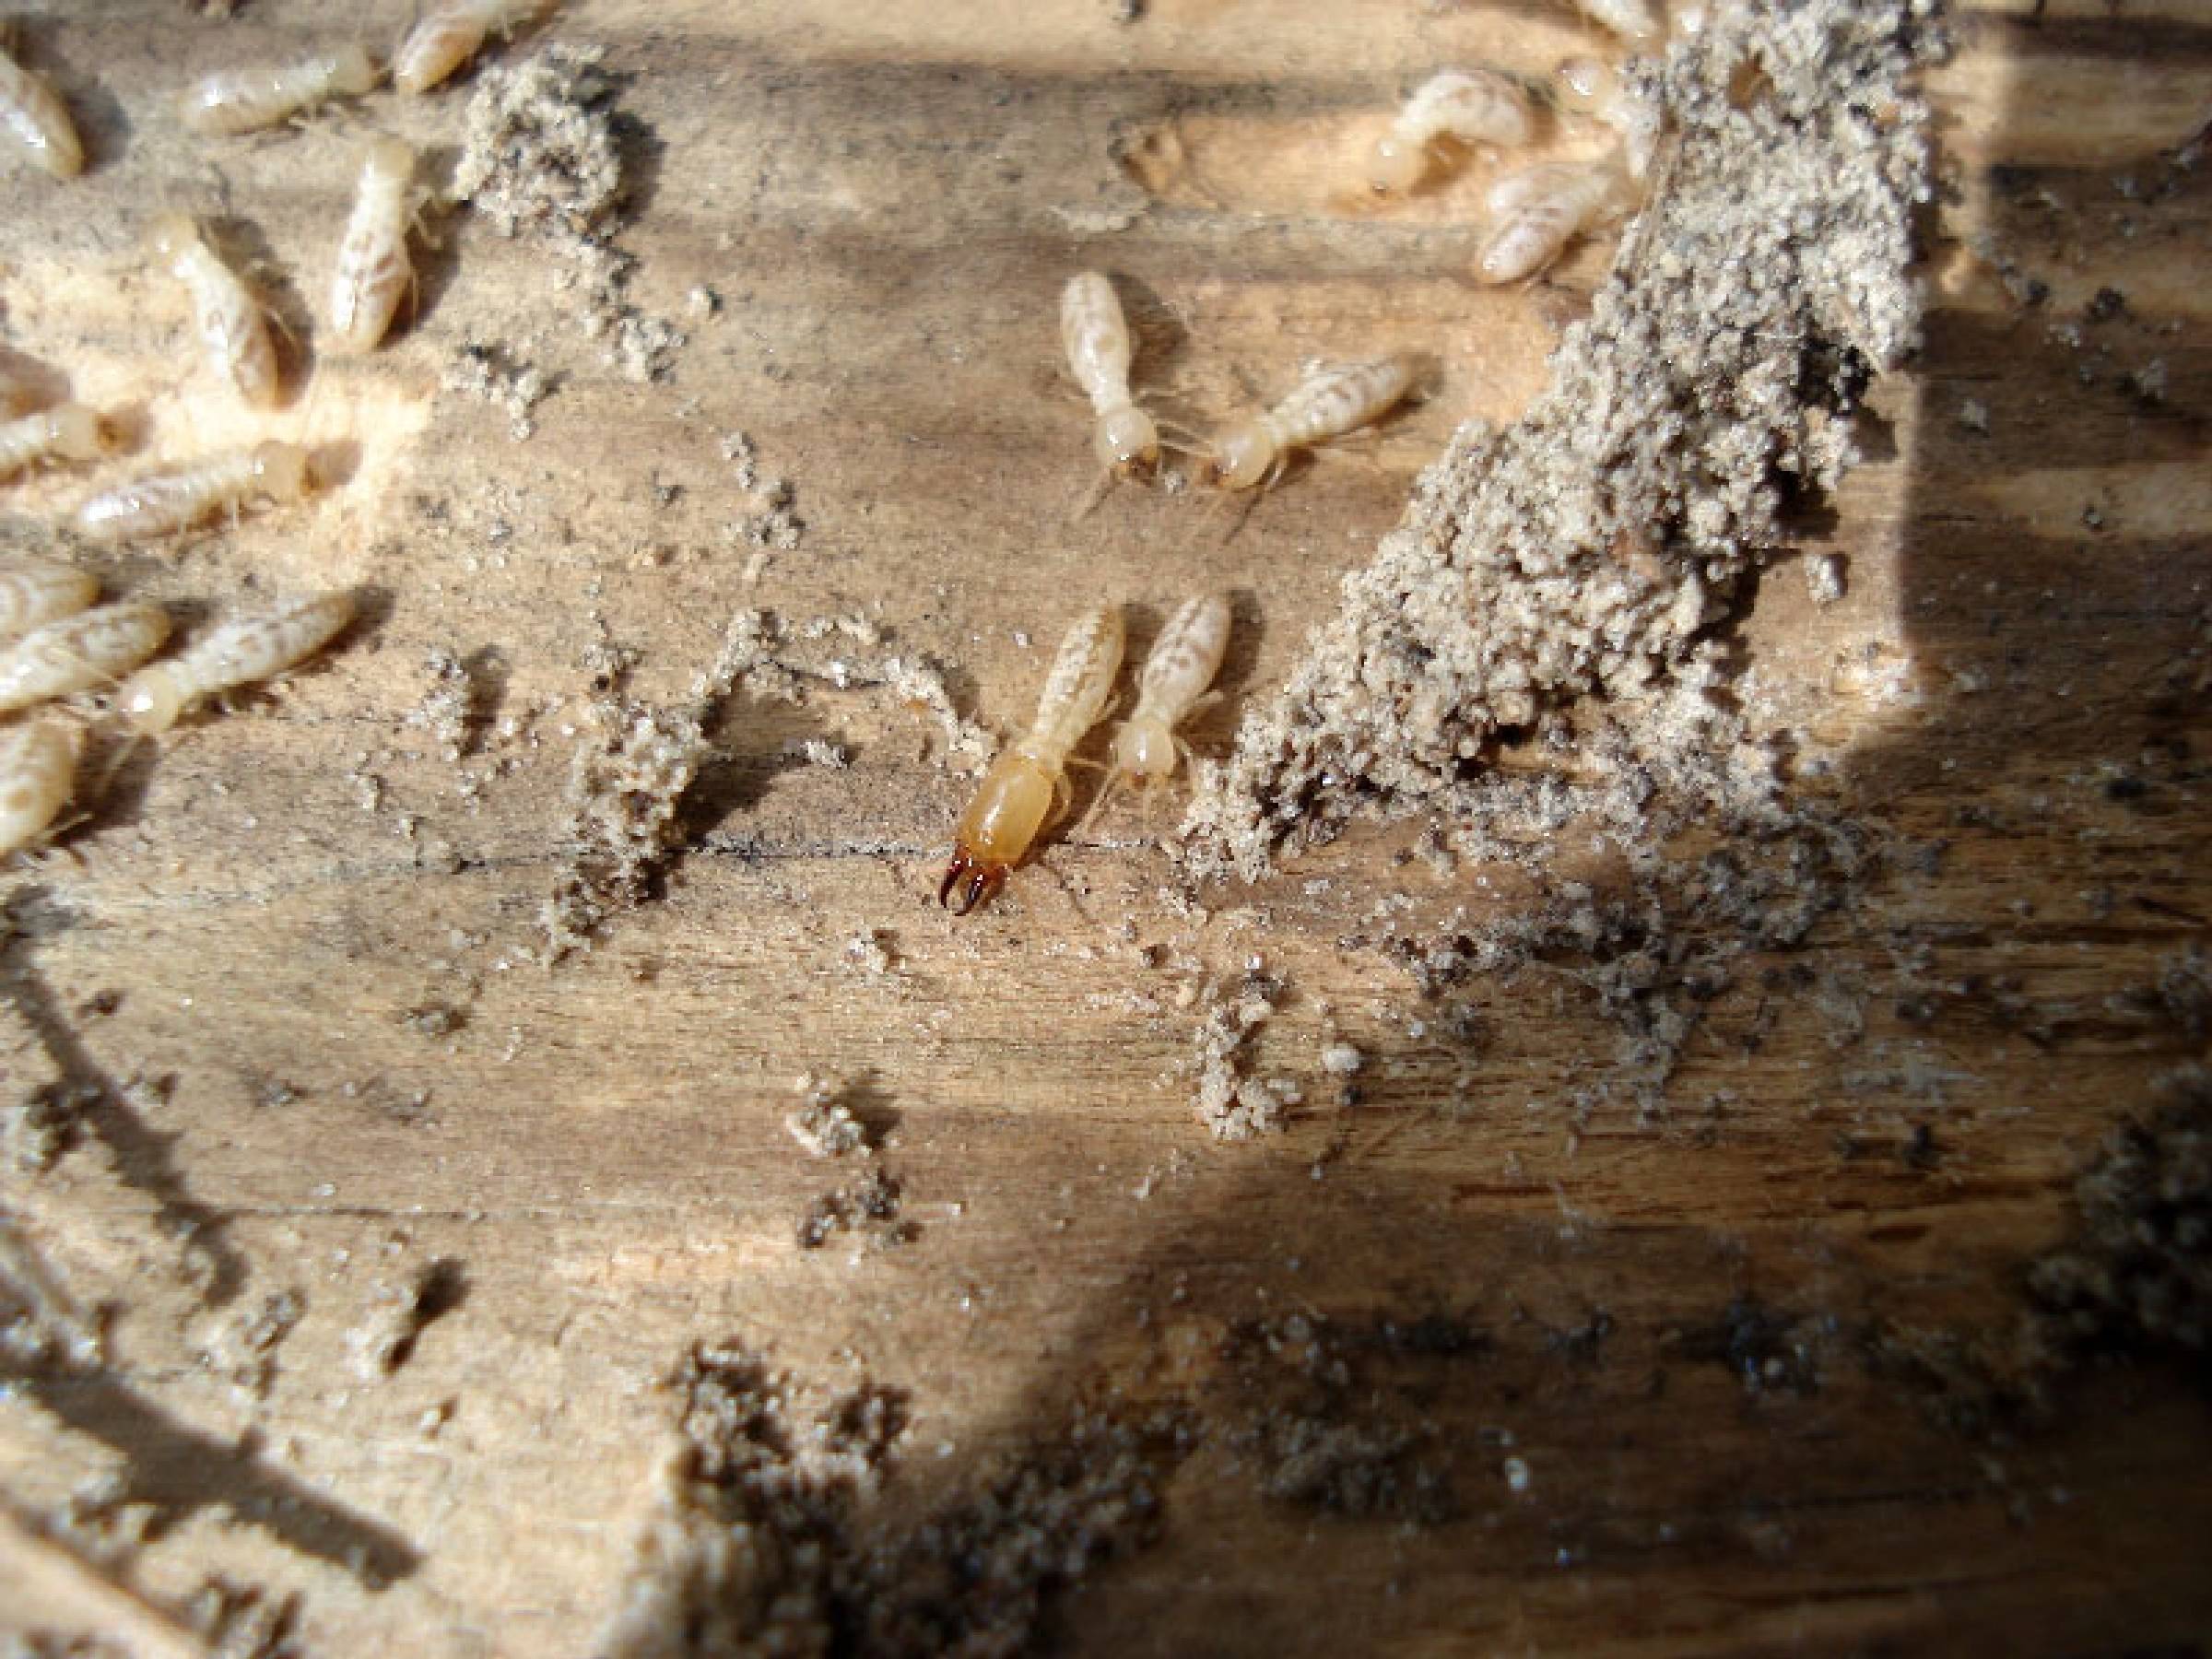 Subterranean Termites Photo Gallery